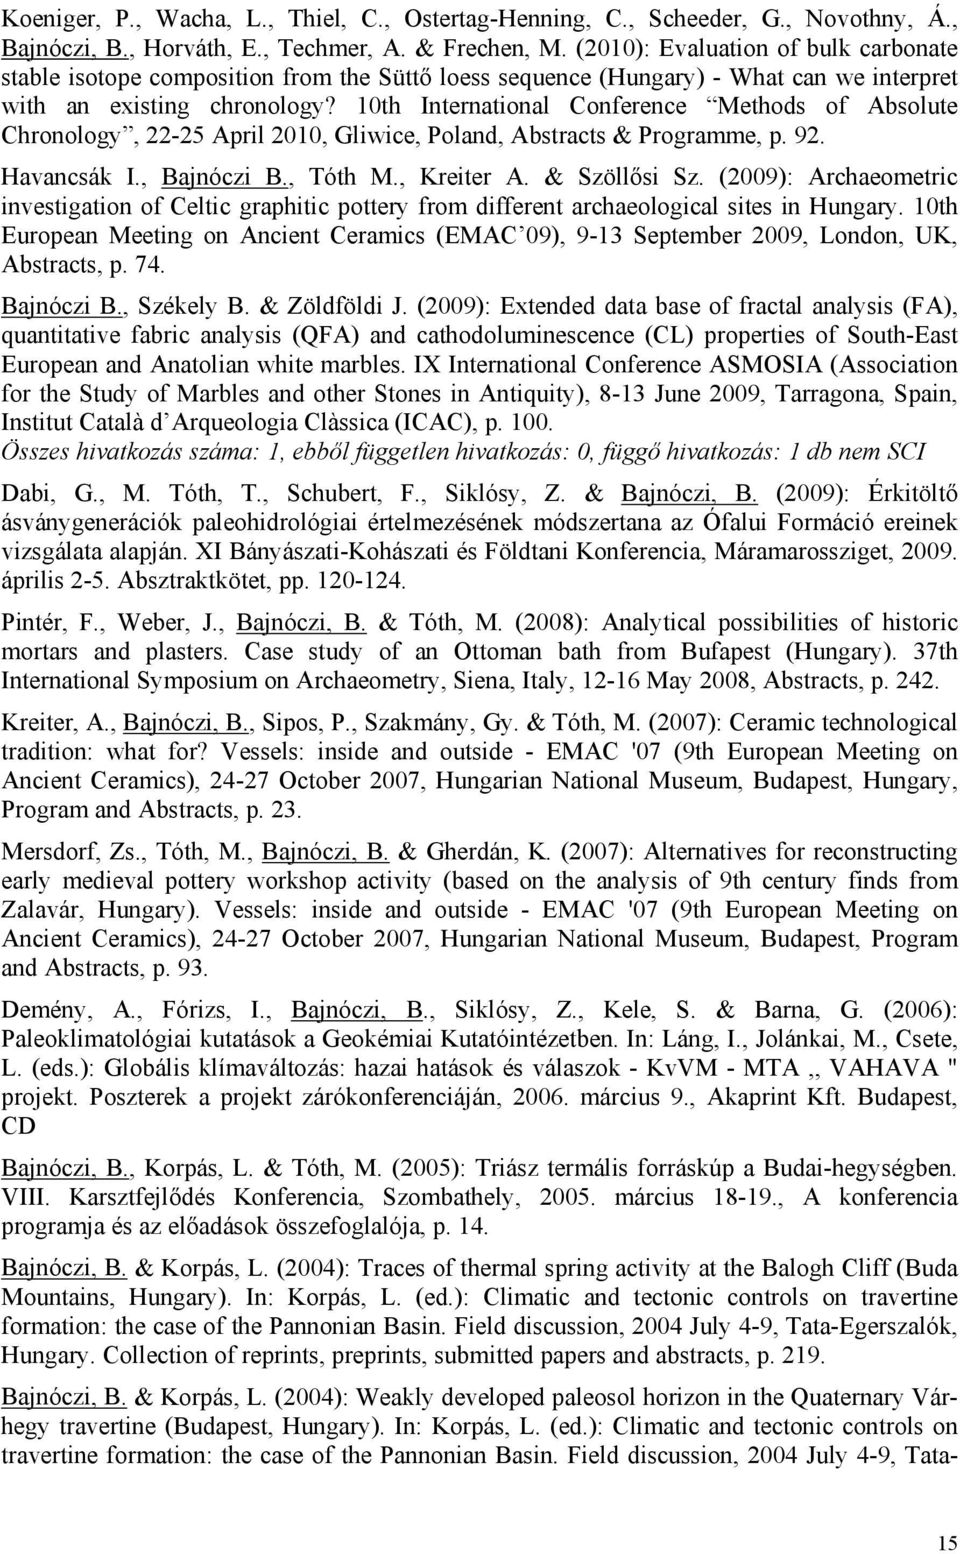 10th International Conference Methods of Absolute Chronology, 22-25 April 2010, Gliwice, Poland, Abstracts & Programme, p. 92. Havancsák I., Bajnóczi B., Tóth M., Kreiter A. & Szöllősi Sz.